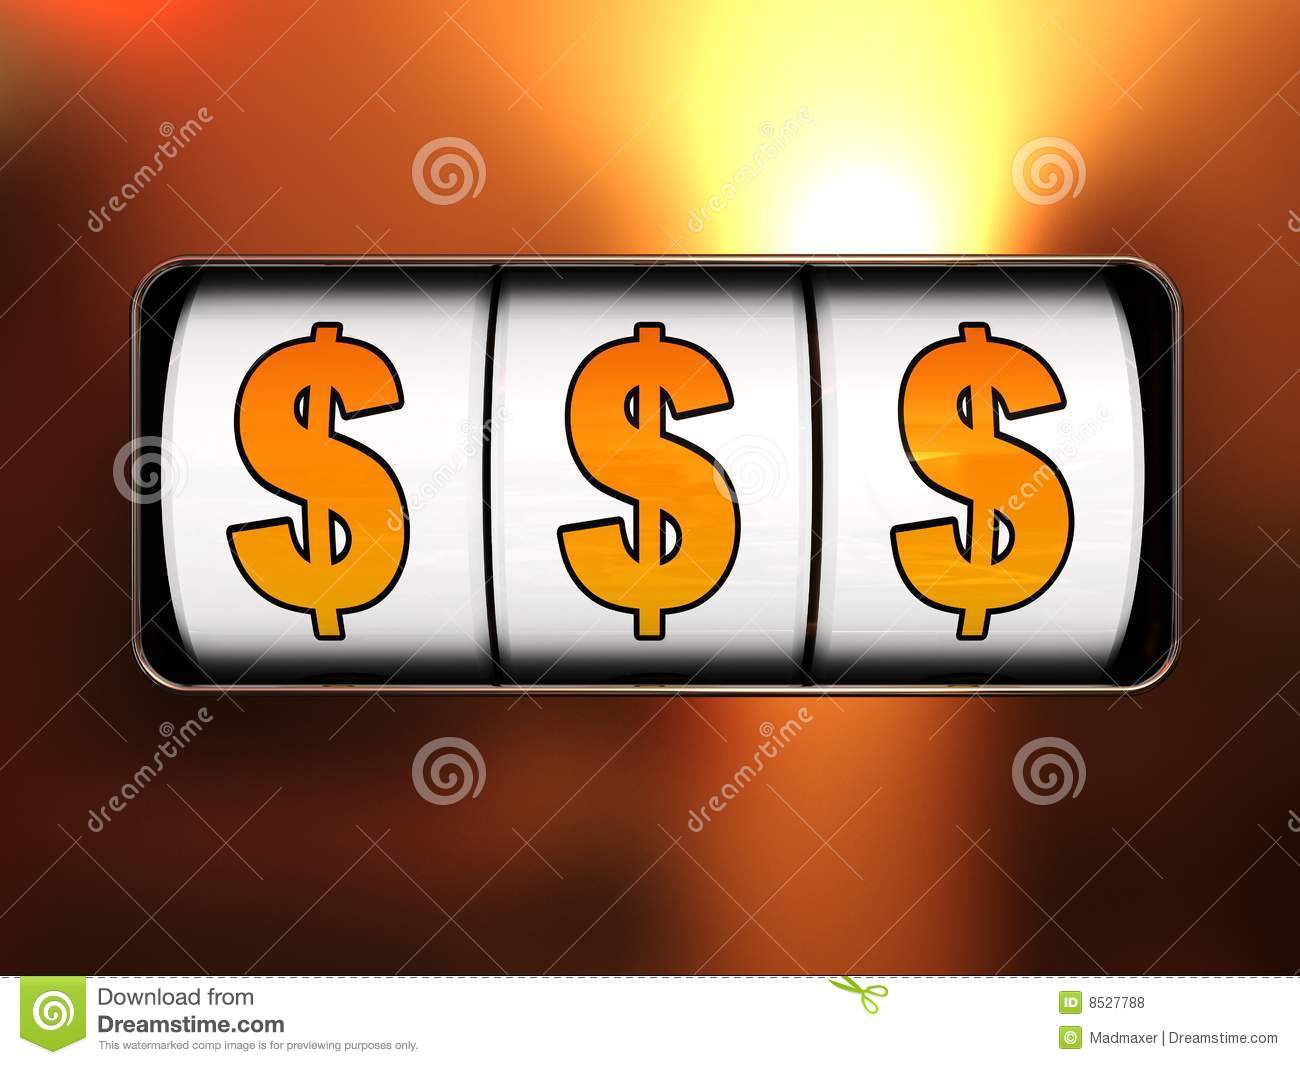 3d Illustration Of Jackpot Winning Three Dollar Signs